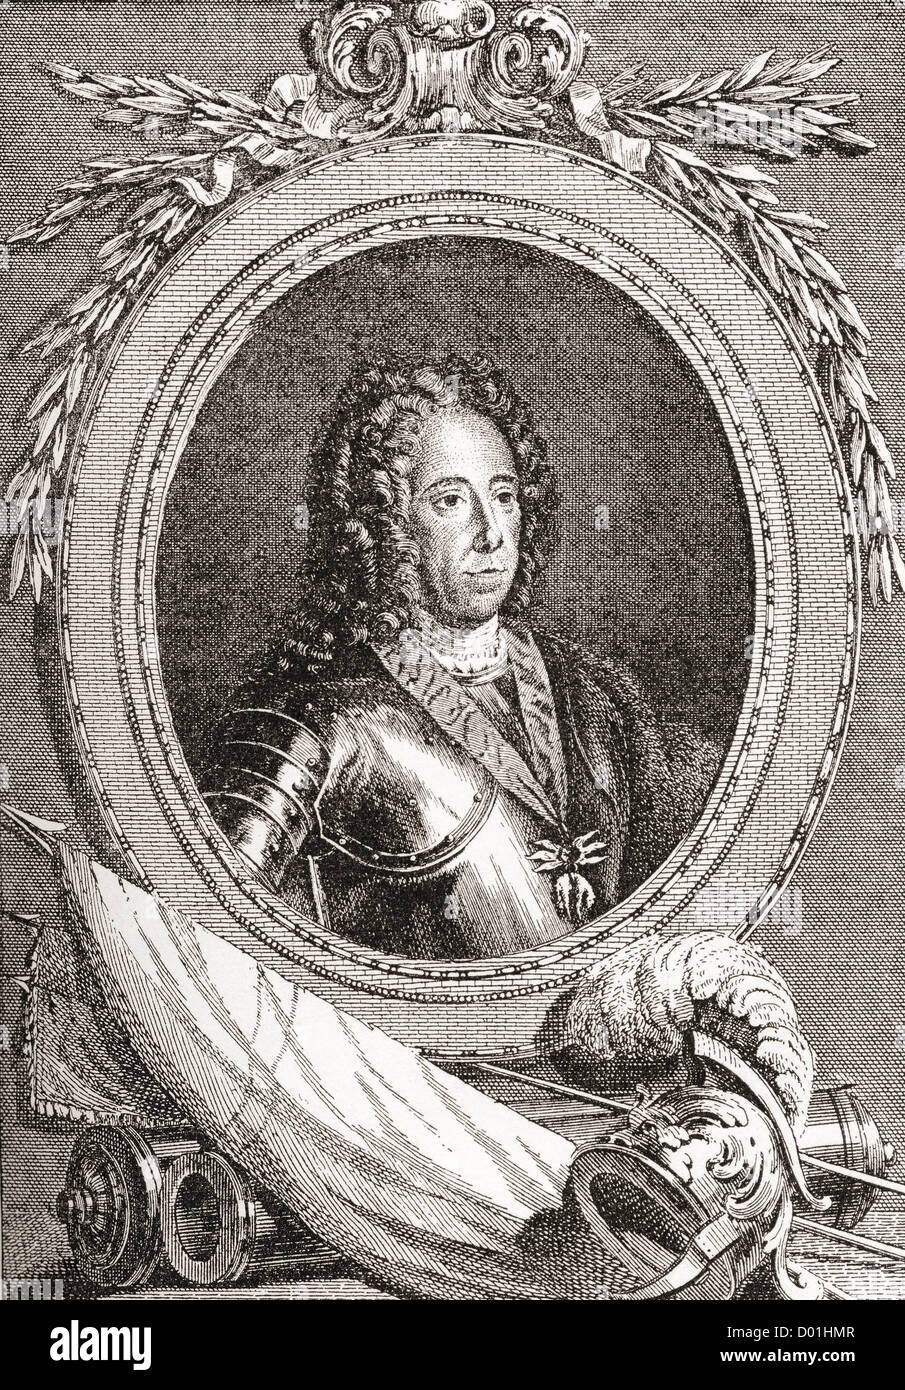 Il principe Eugenio di Savoia, 1663 - 1736. French comandante militare. Foto Stock